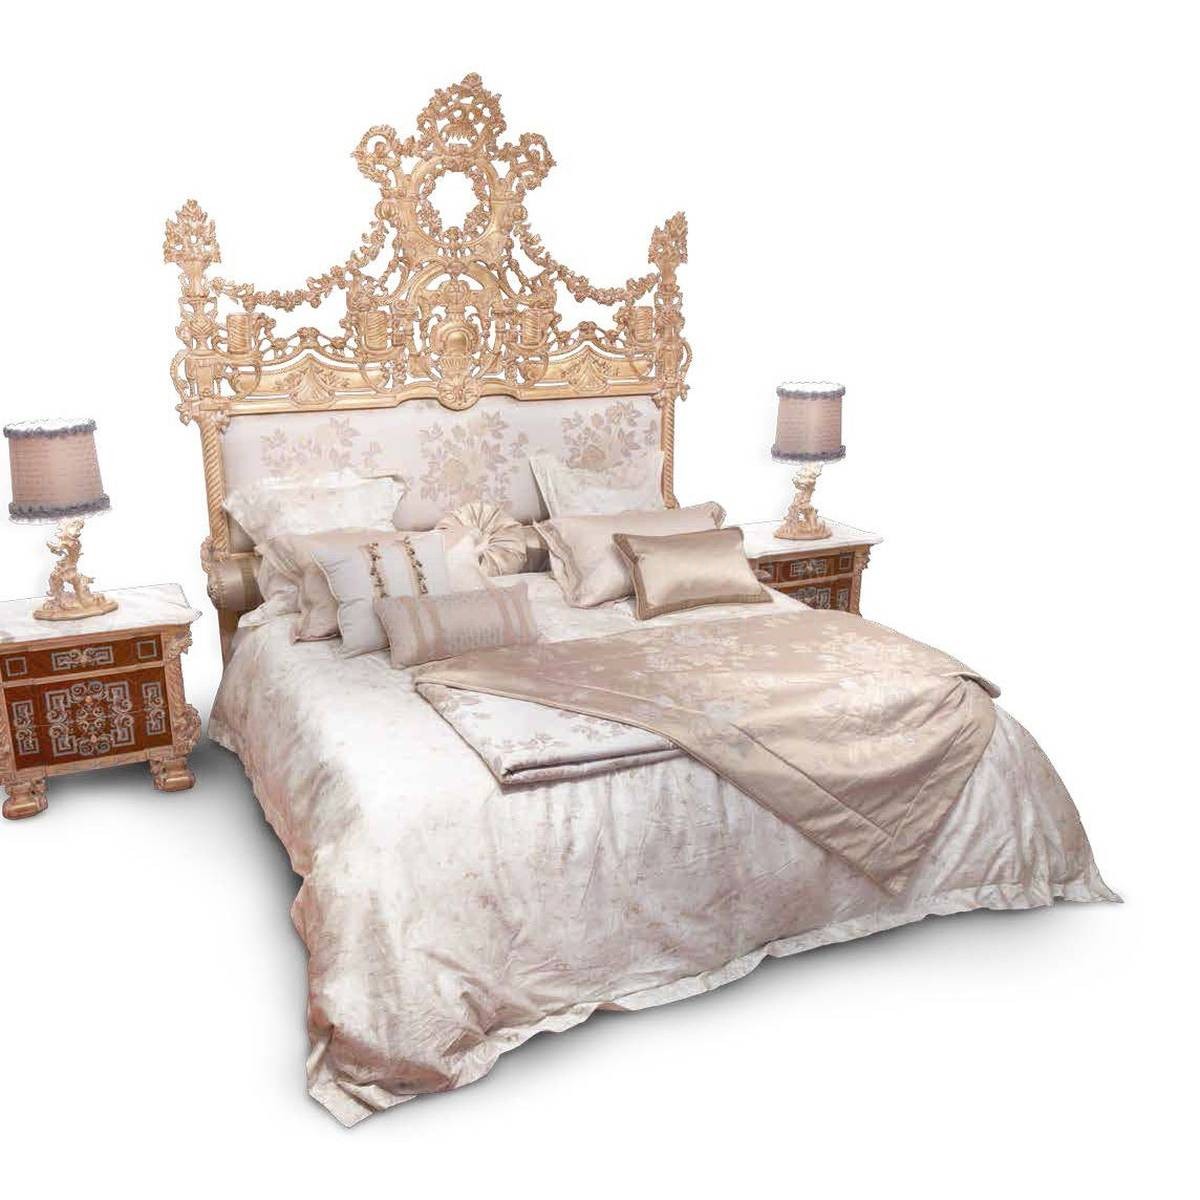 Двуспальная кровать L3. 1401 Gemma/bed из Италии фабрики ASNAGHI INTERIORS